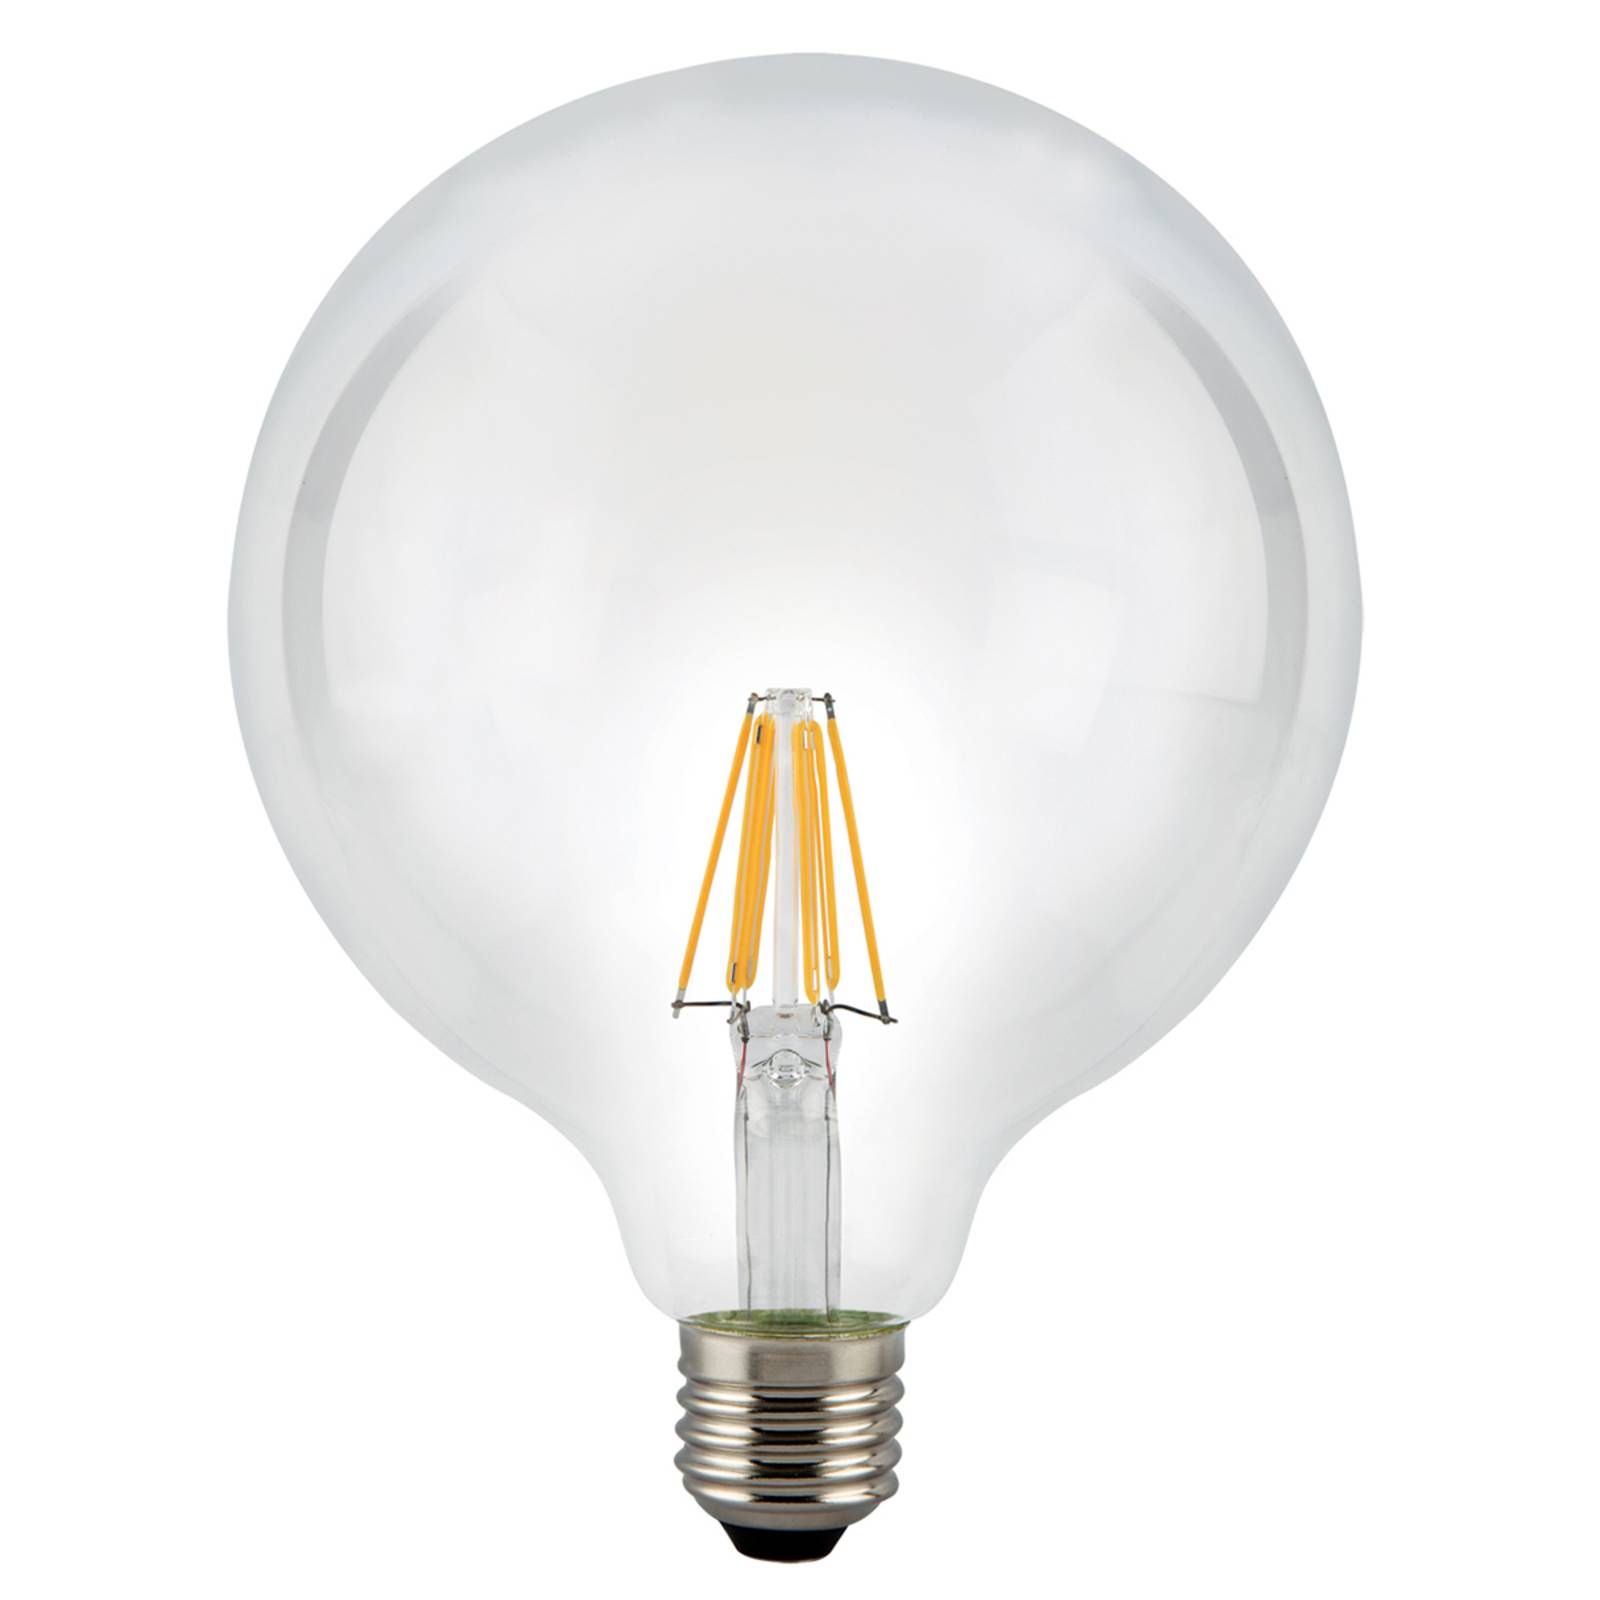 Sylvania LED žiarovka globe E27 8 W 827 číra, E27, 8W, Energialuokka: E, P: 17.8 cm